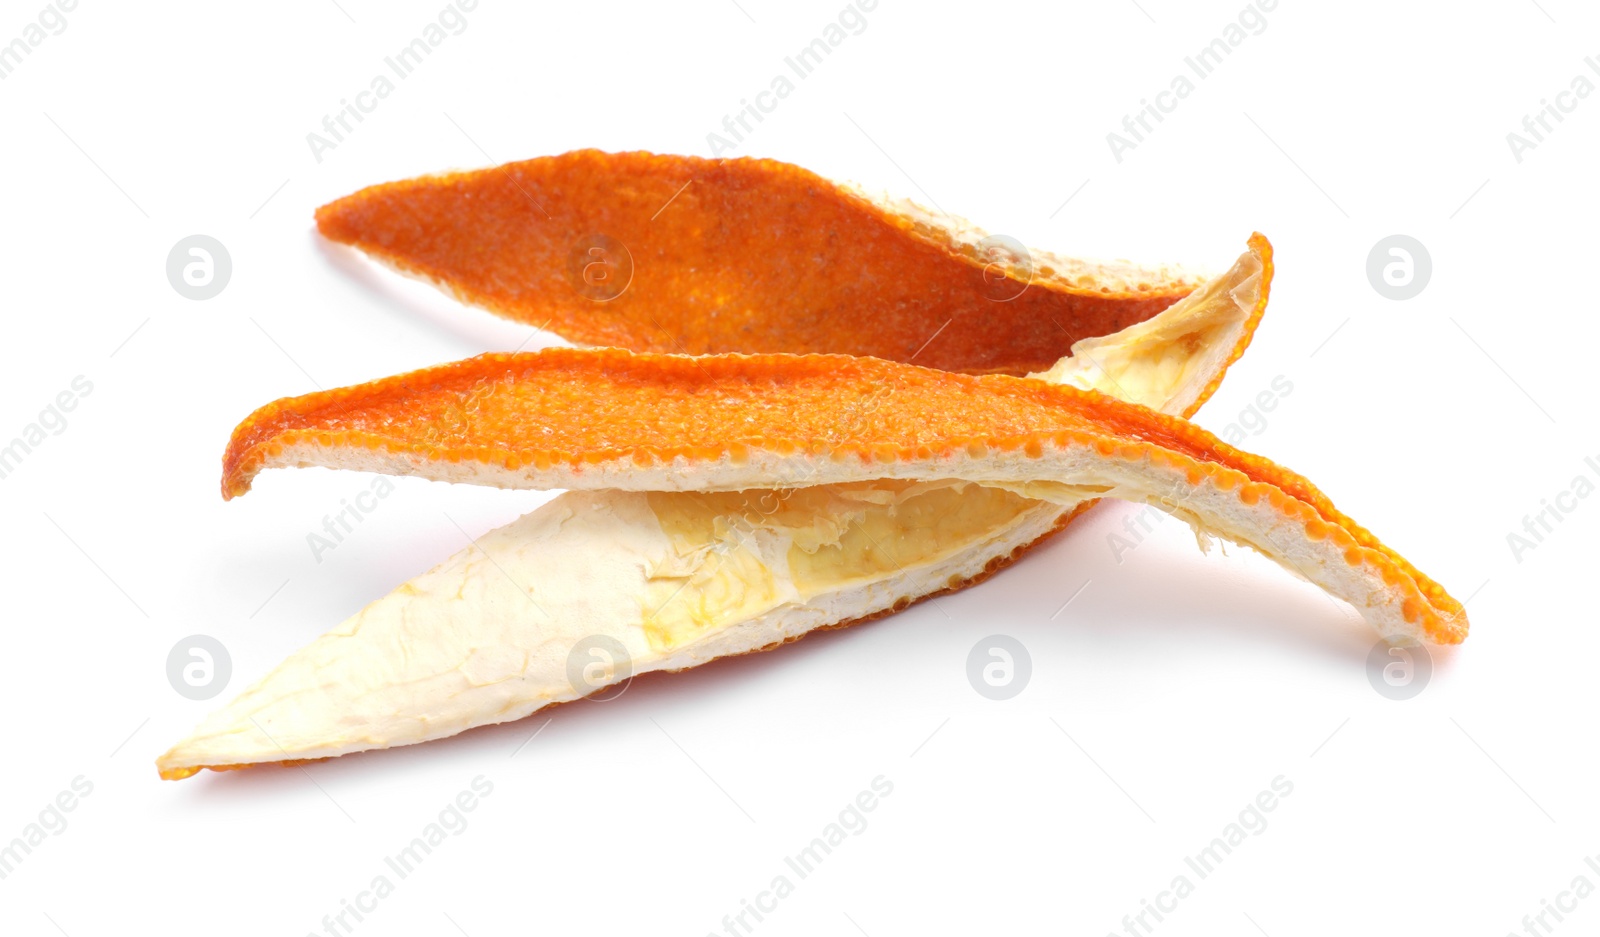 Photo of Dry orange fruit peels on white background